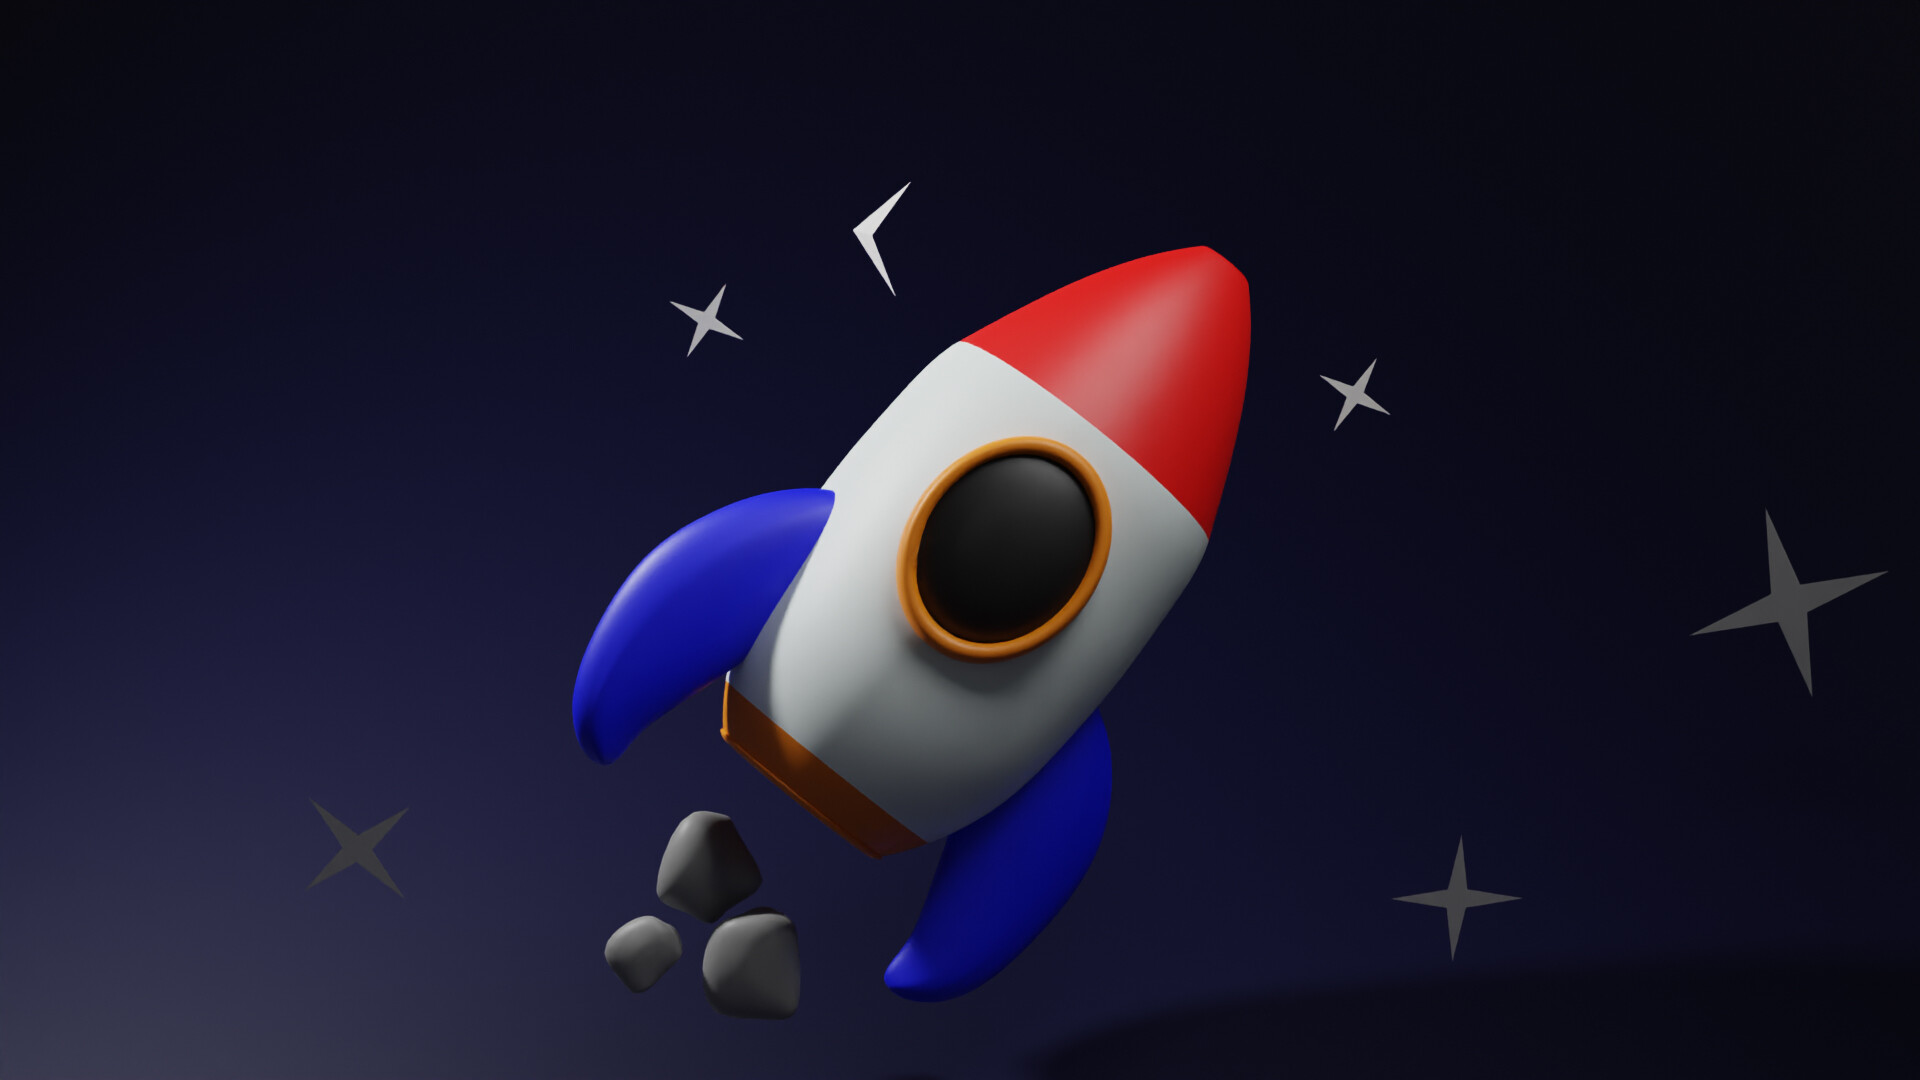 ArtStation - Rocket